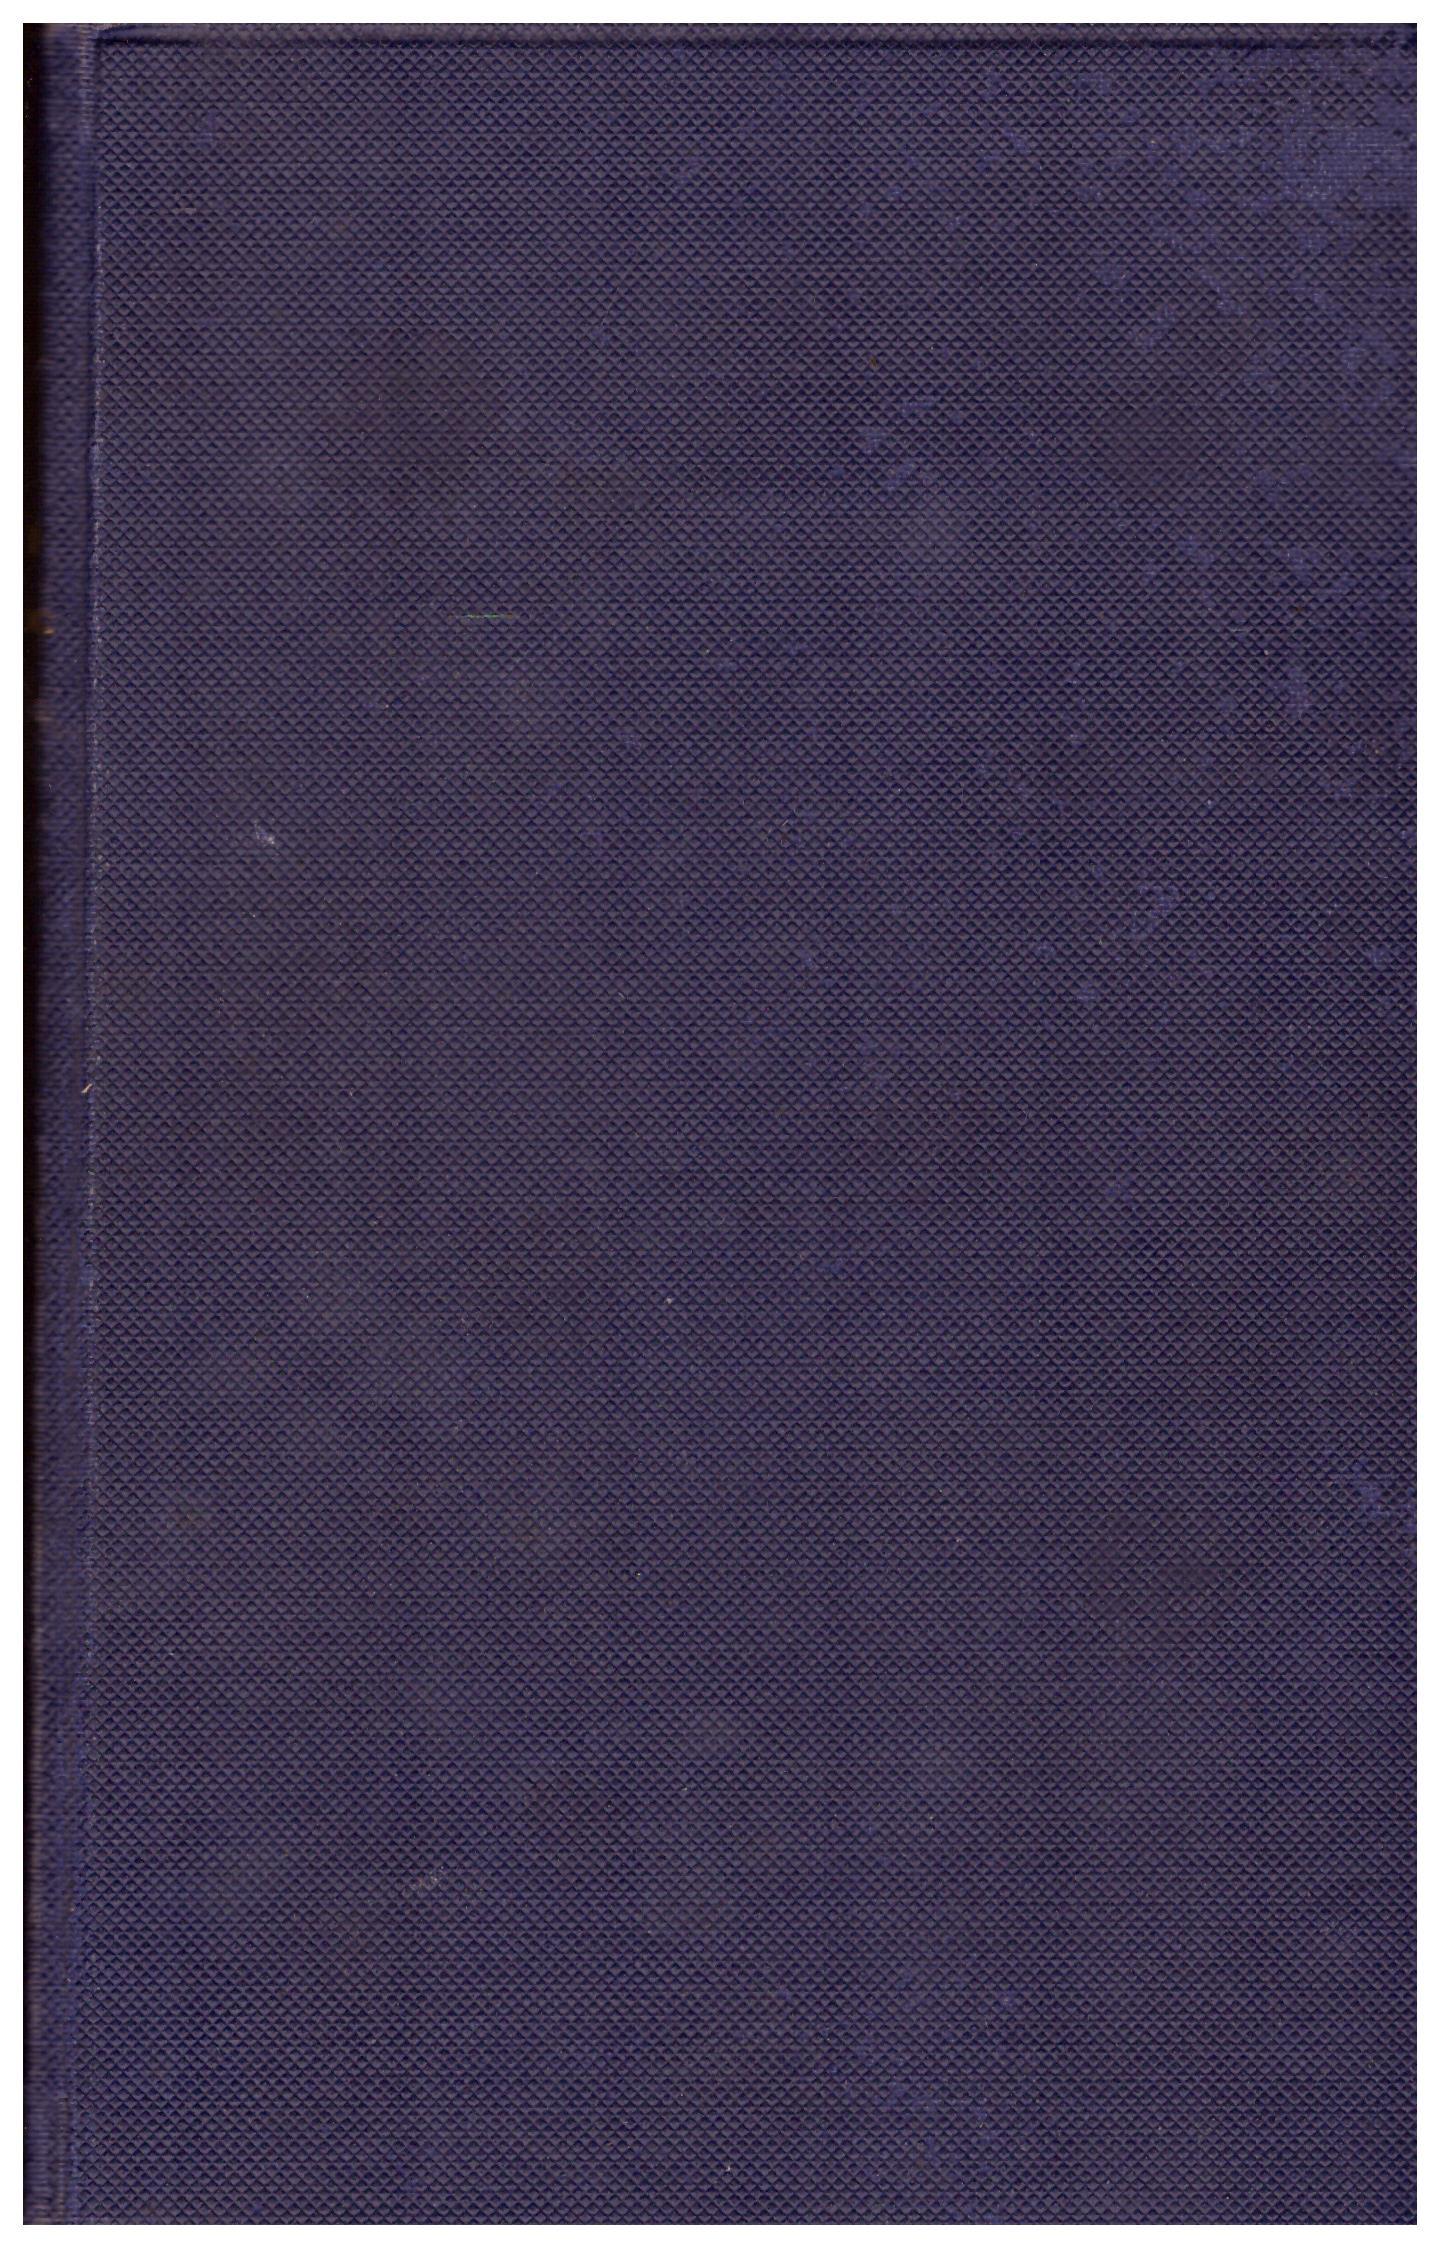 Titolo: Codex iuris canonici     Autore: AA.VV.     Editore: Typis polyglottis vaticanis